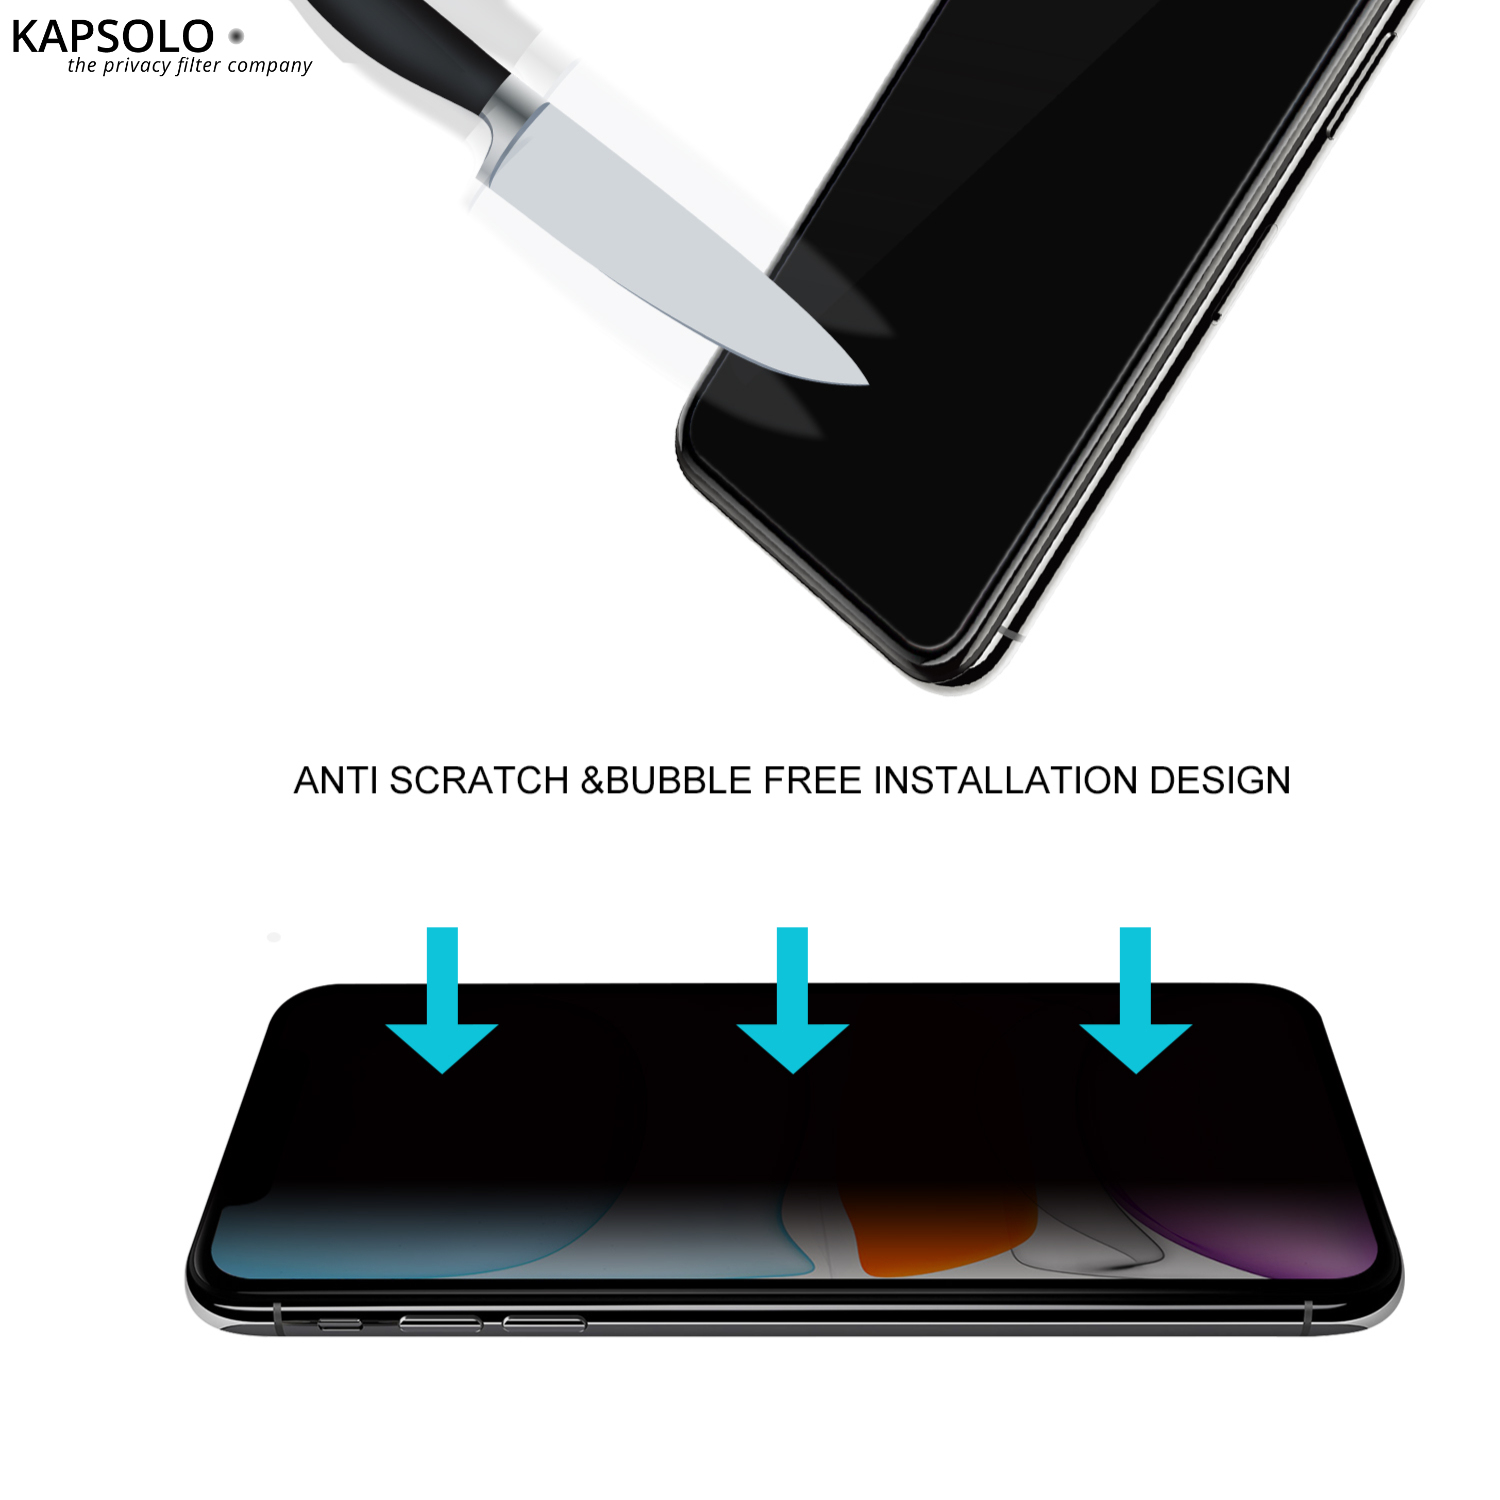 KAPSOLO Blickschutzfilter Displayglas - vollflächiges gehärtetes Privacy Schutzglas / Temperglas mit abgerundete Kanten - schützen sie ihre sensiblen und privaten Daten vor unerwünschten Blicken für Apple iPhone XR - Klare Bildschirmschutzfolie - Apple - 